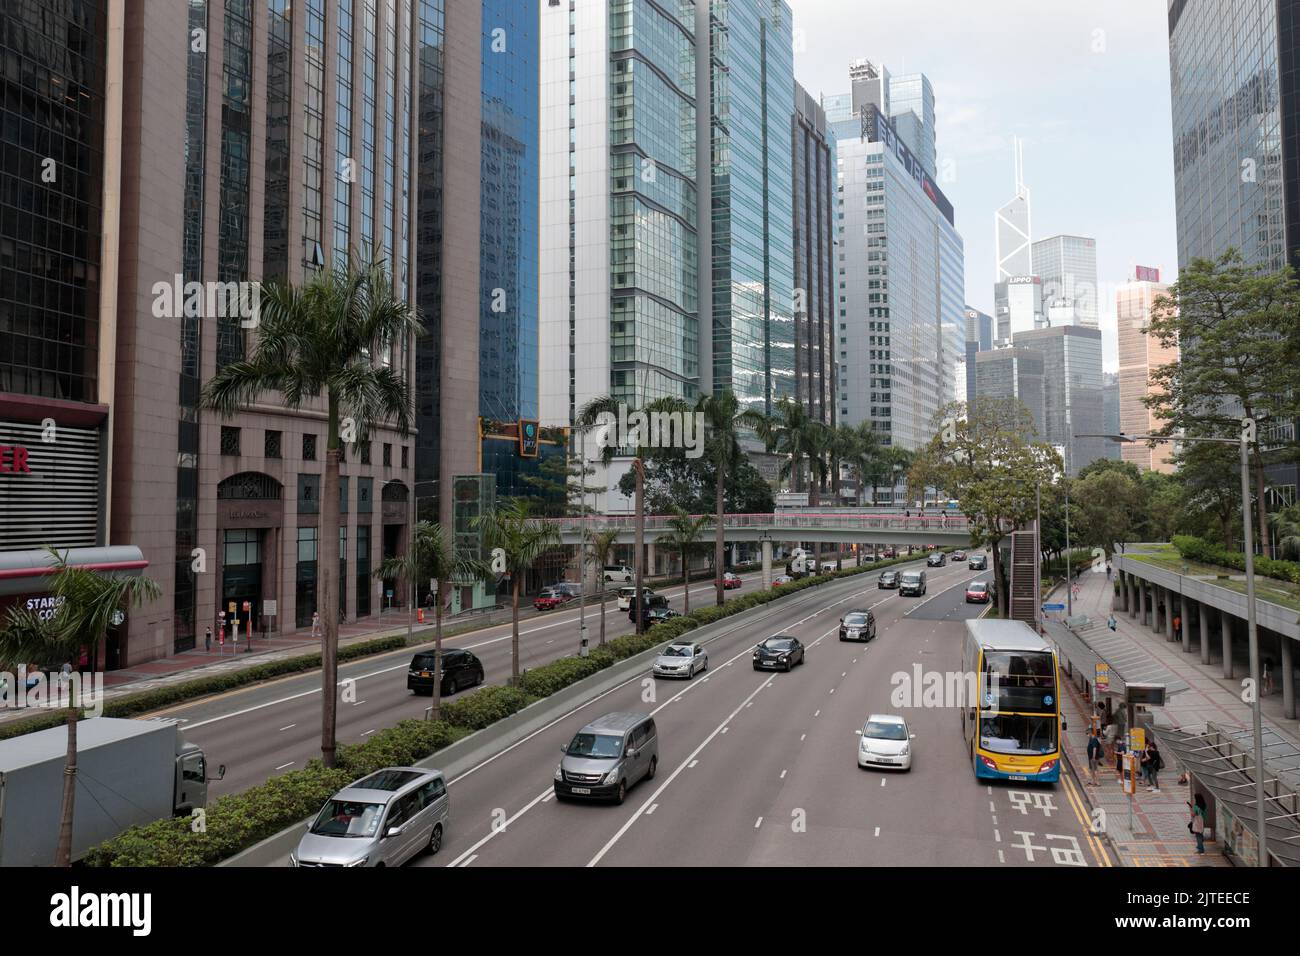 Vista de la calle hacia el oeste, Connaught Road, Wanchai, Hong Kong Foto de stock